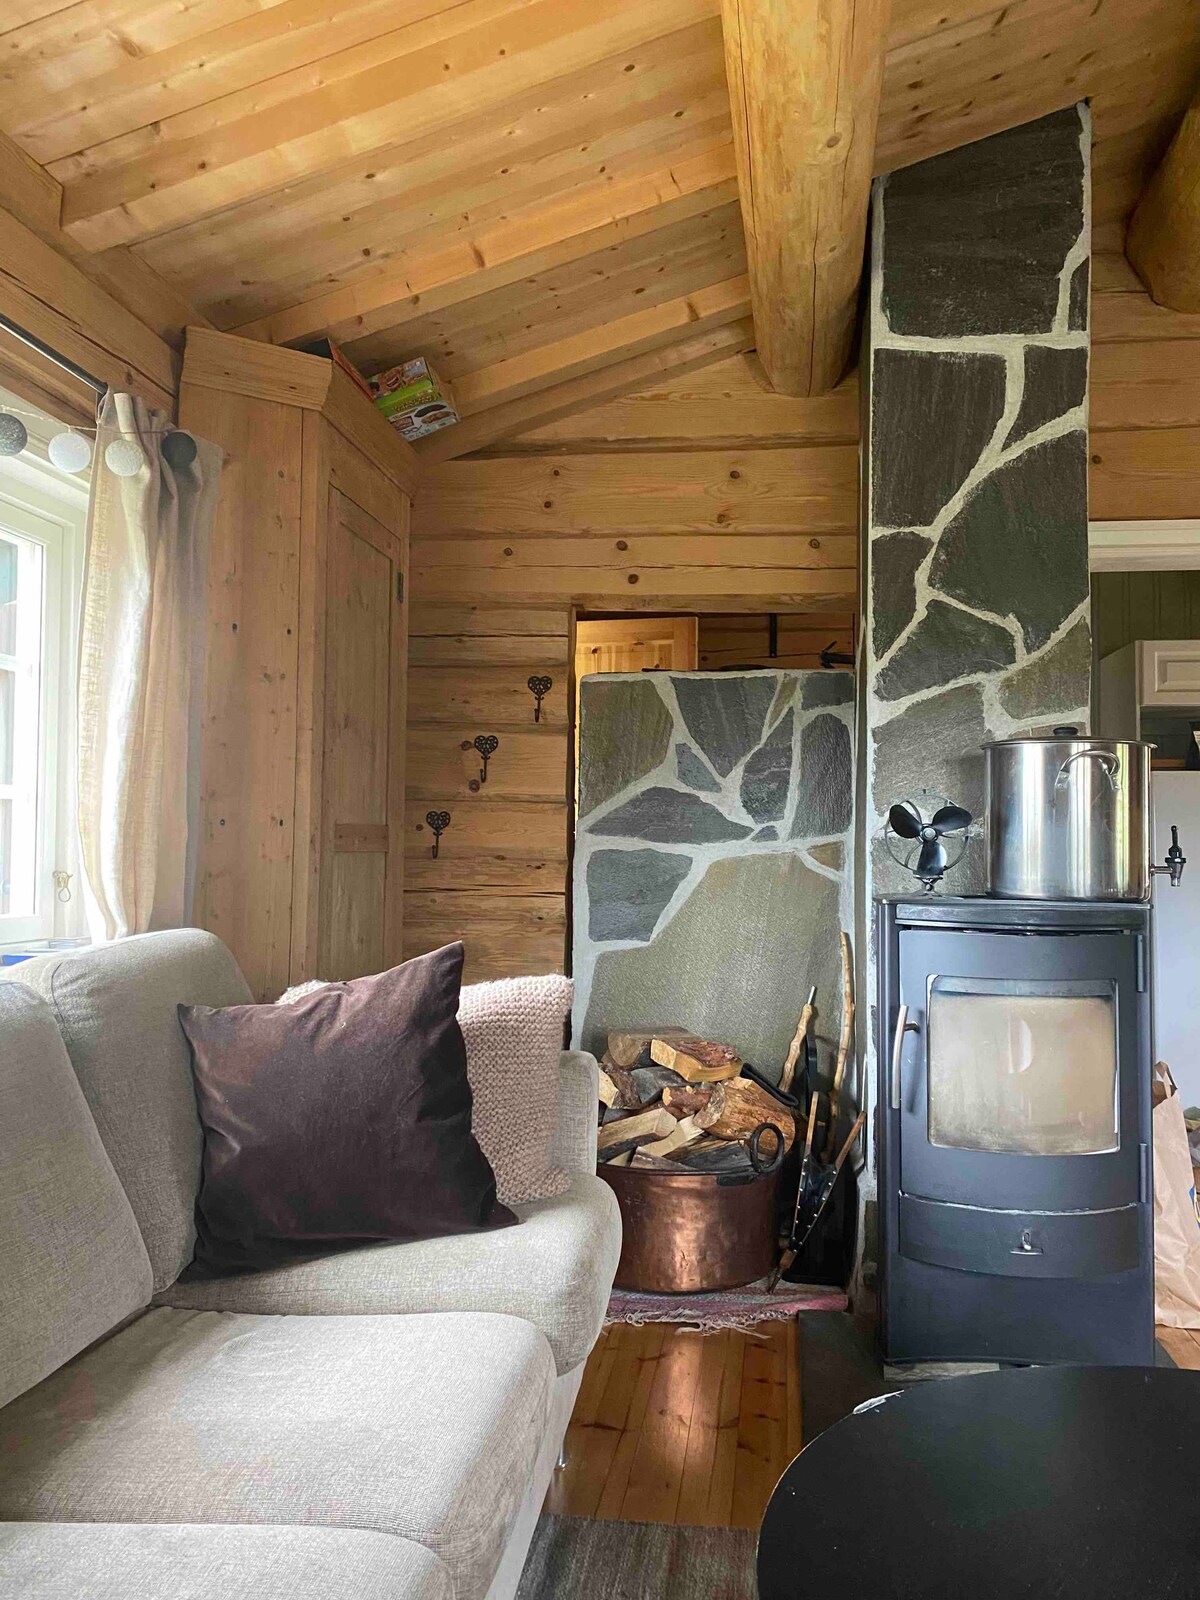 景观舒适的小木屋空间。